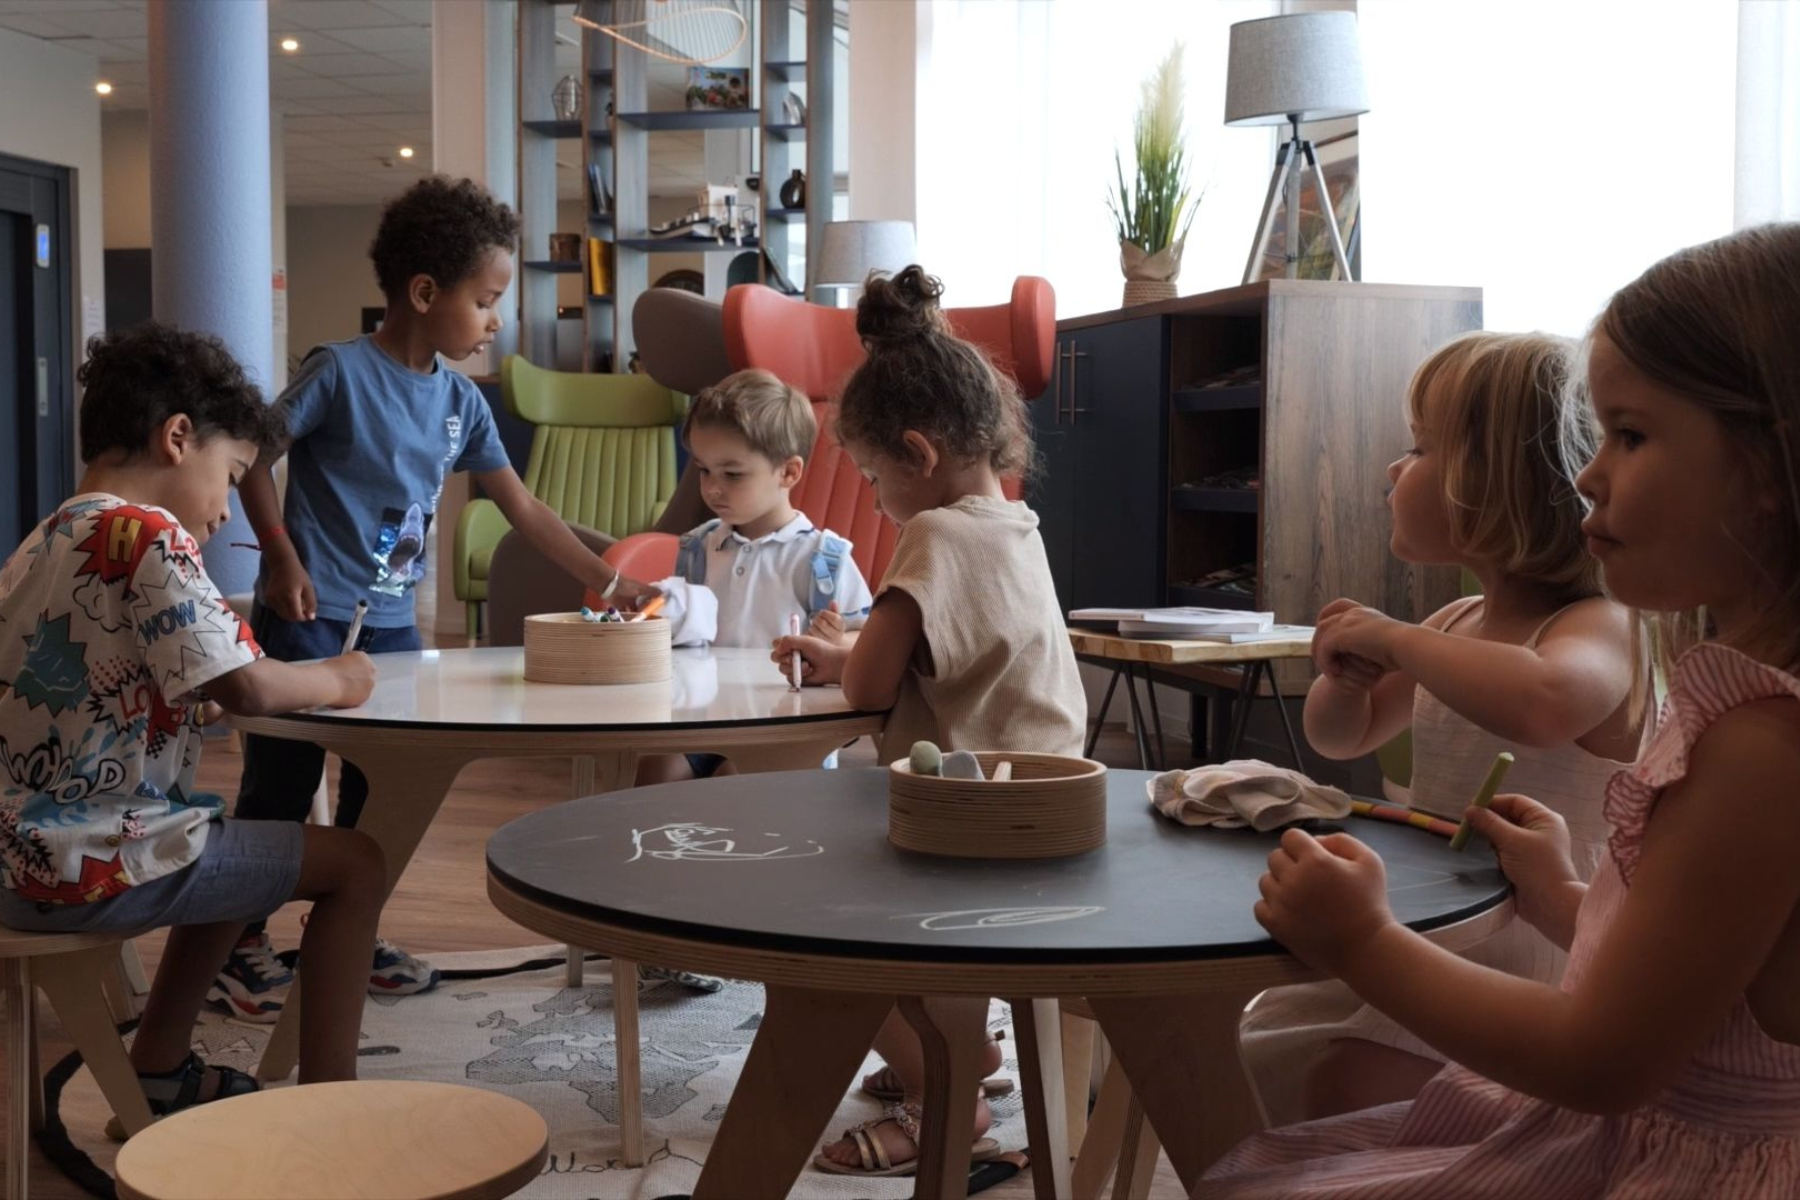 Les Espaces Kids Friendly : Accueillir les familles dans les Espaces Publics